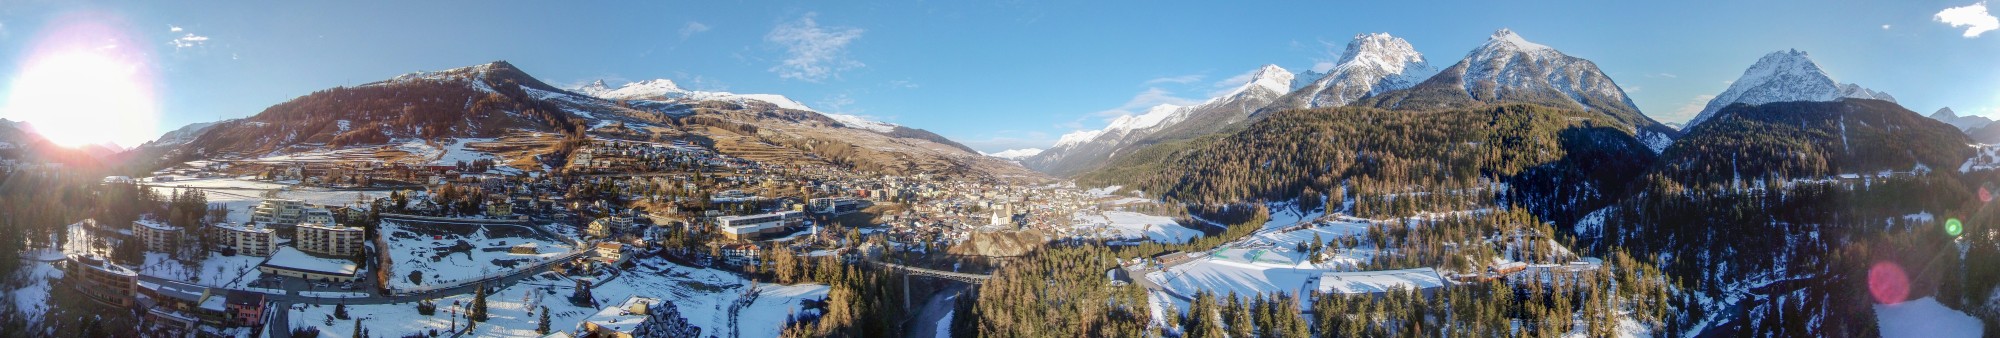 2015-02-26 16-54-30 - Switzerland Kanton Graubünden Scuol QC 360° 6h